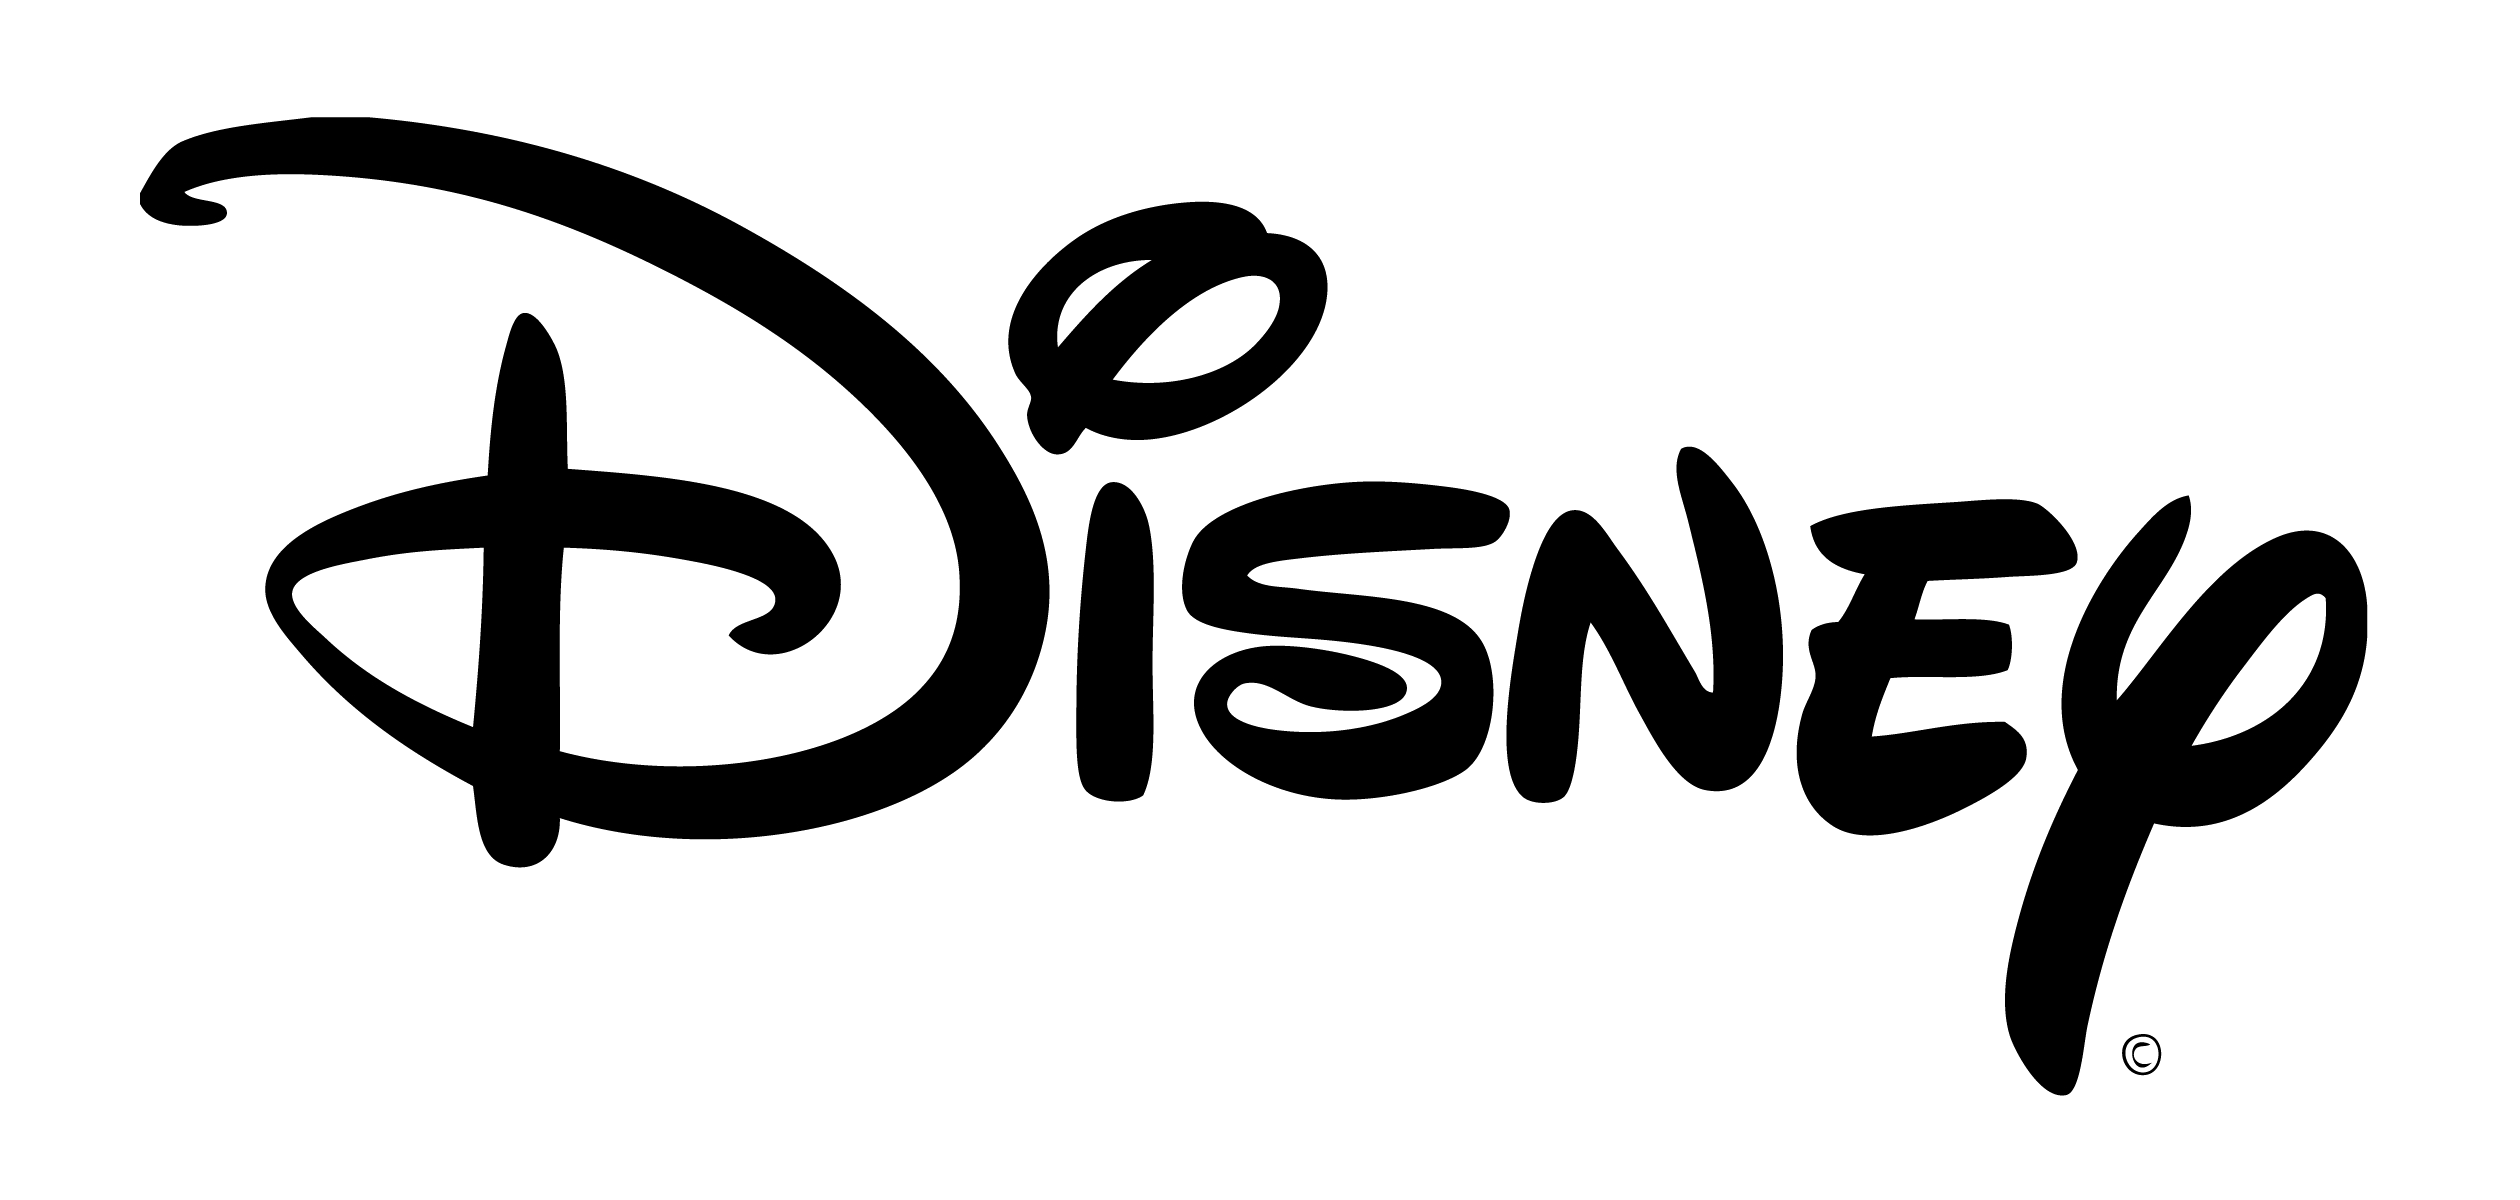 Disnesy Logo - Walt Disney logo PNG image free download